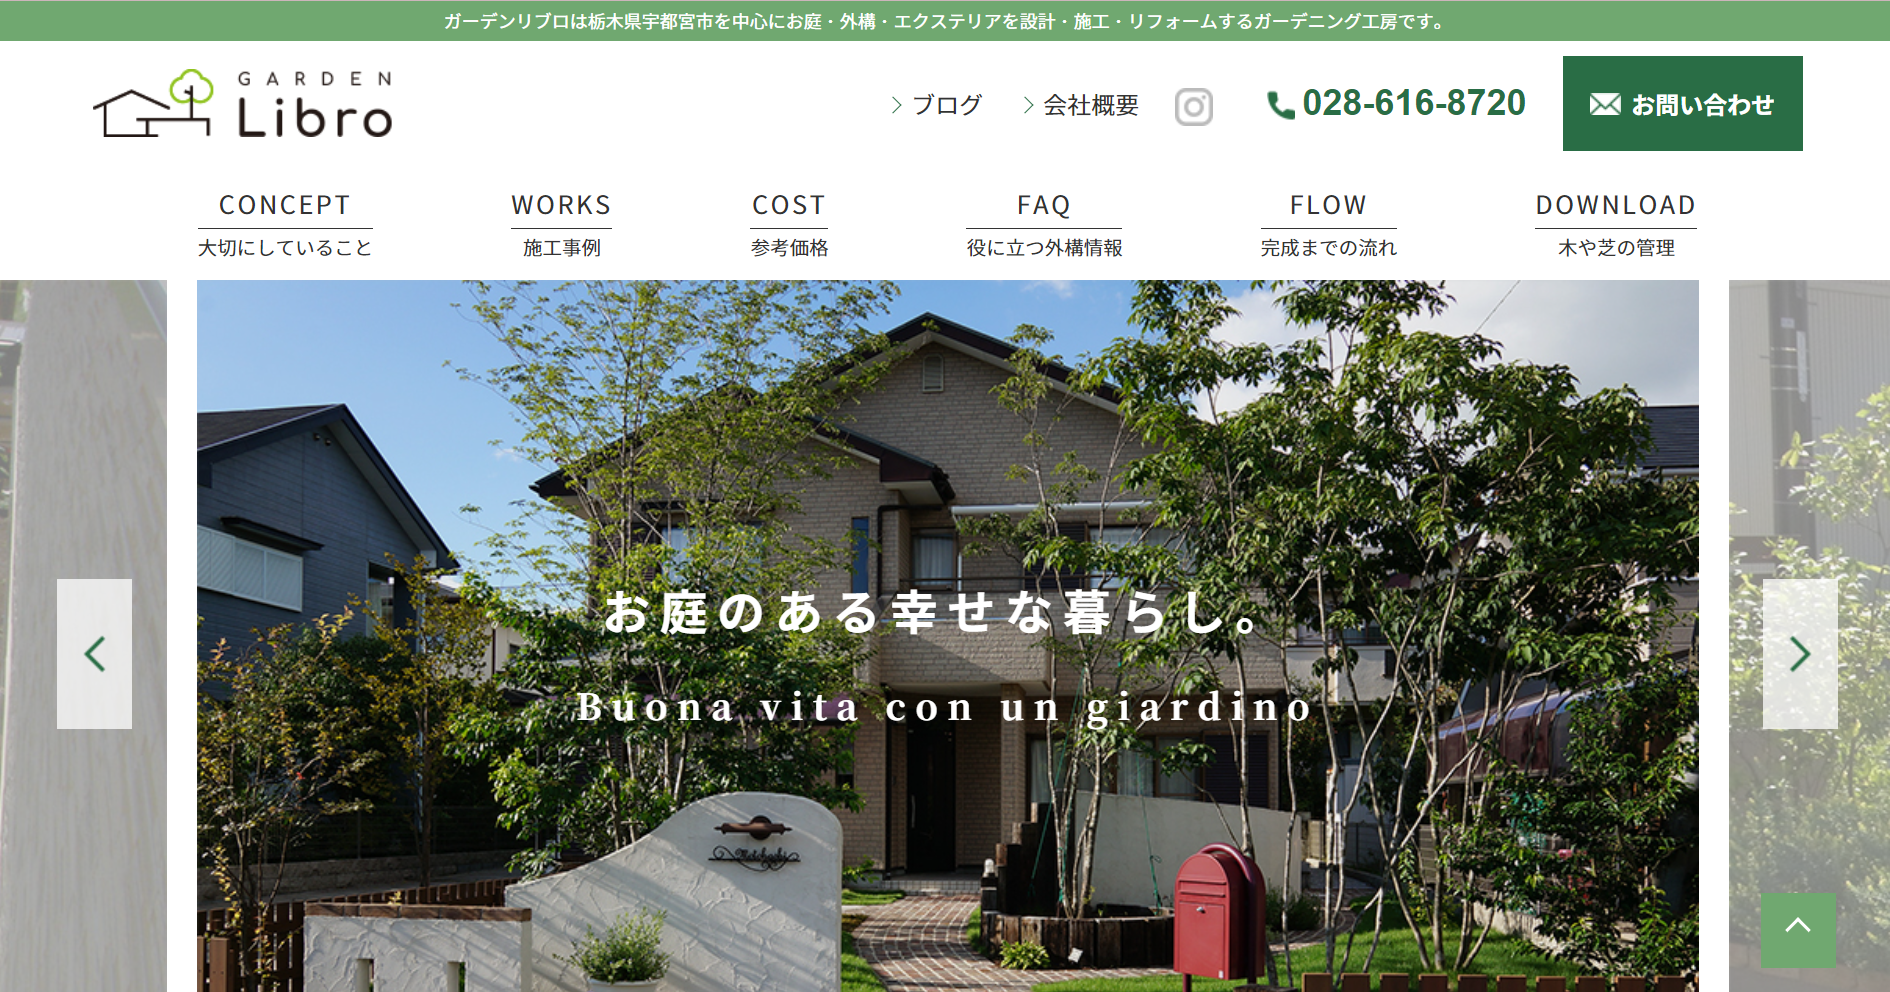 栃木県で評判のおすすめ外構業者ランキング 第4位 ガーデンリブロ